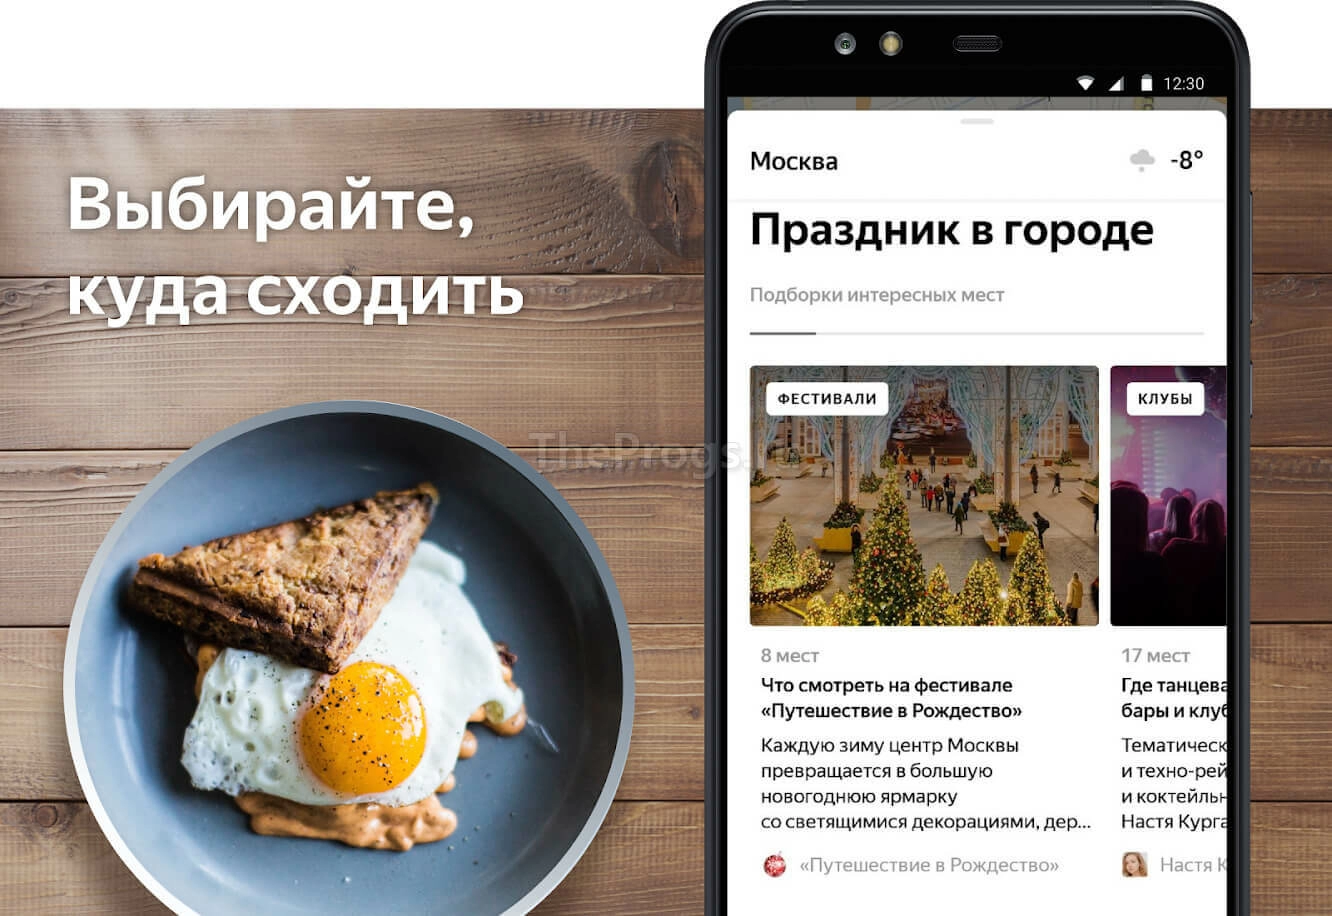 Яндекс Карты - интерфейс (фото)